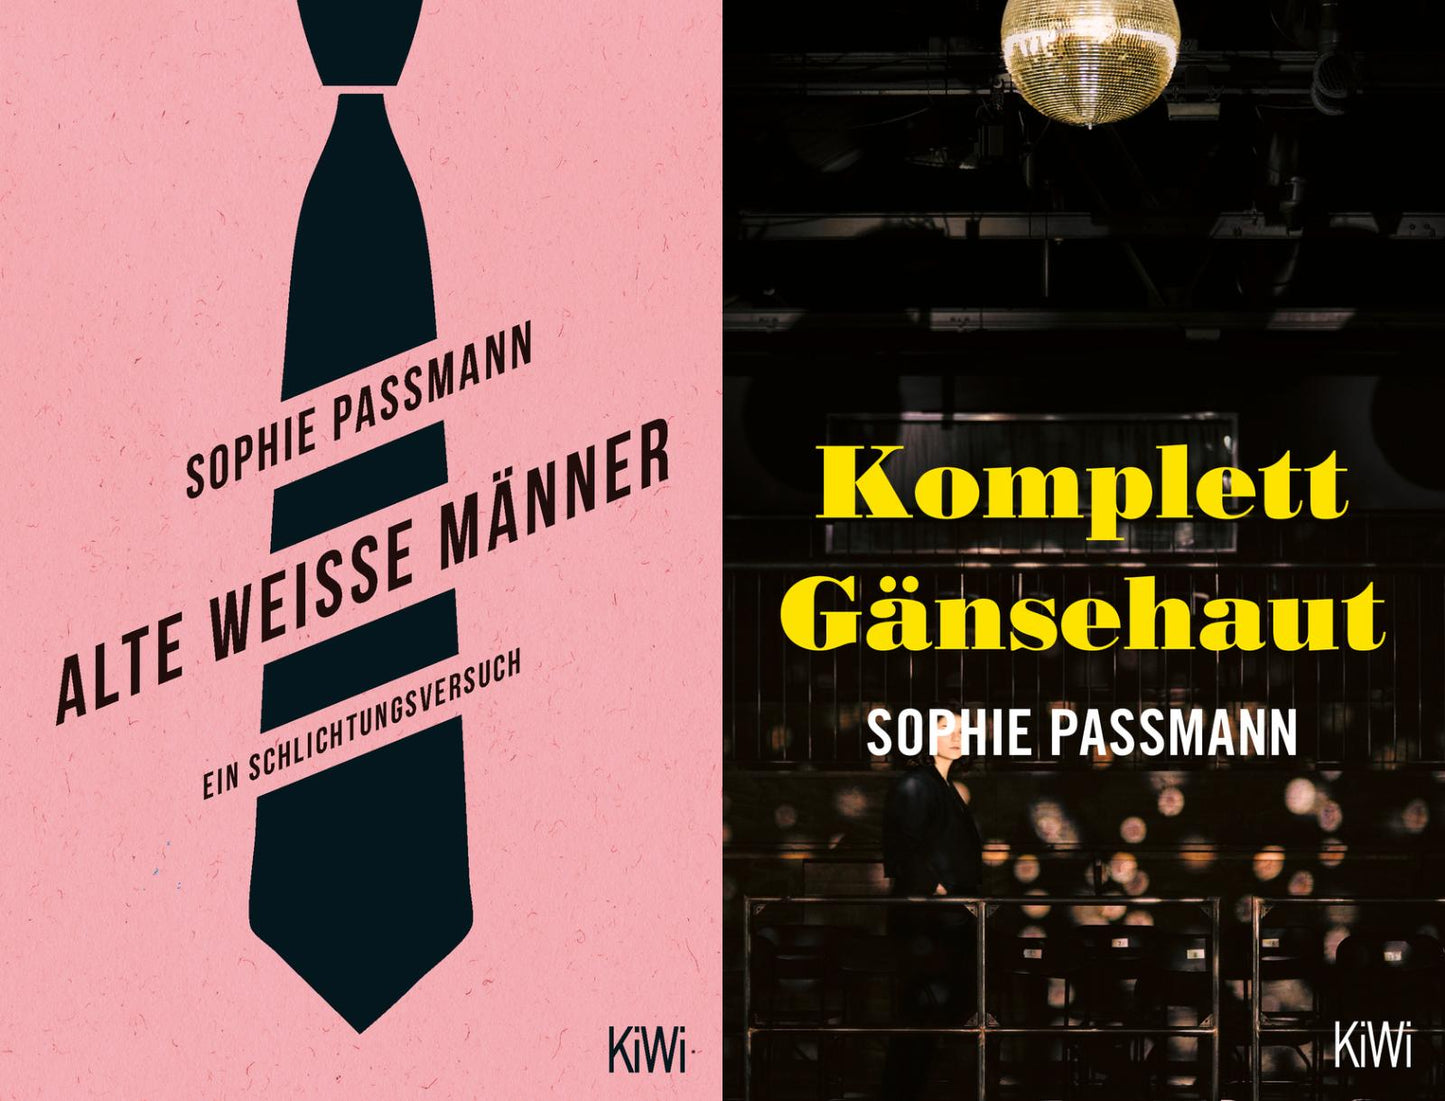 Alte weisse Männer + Komplett Gänsehaut von Sophie Passmann + 1 exklusives Postkartenset